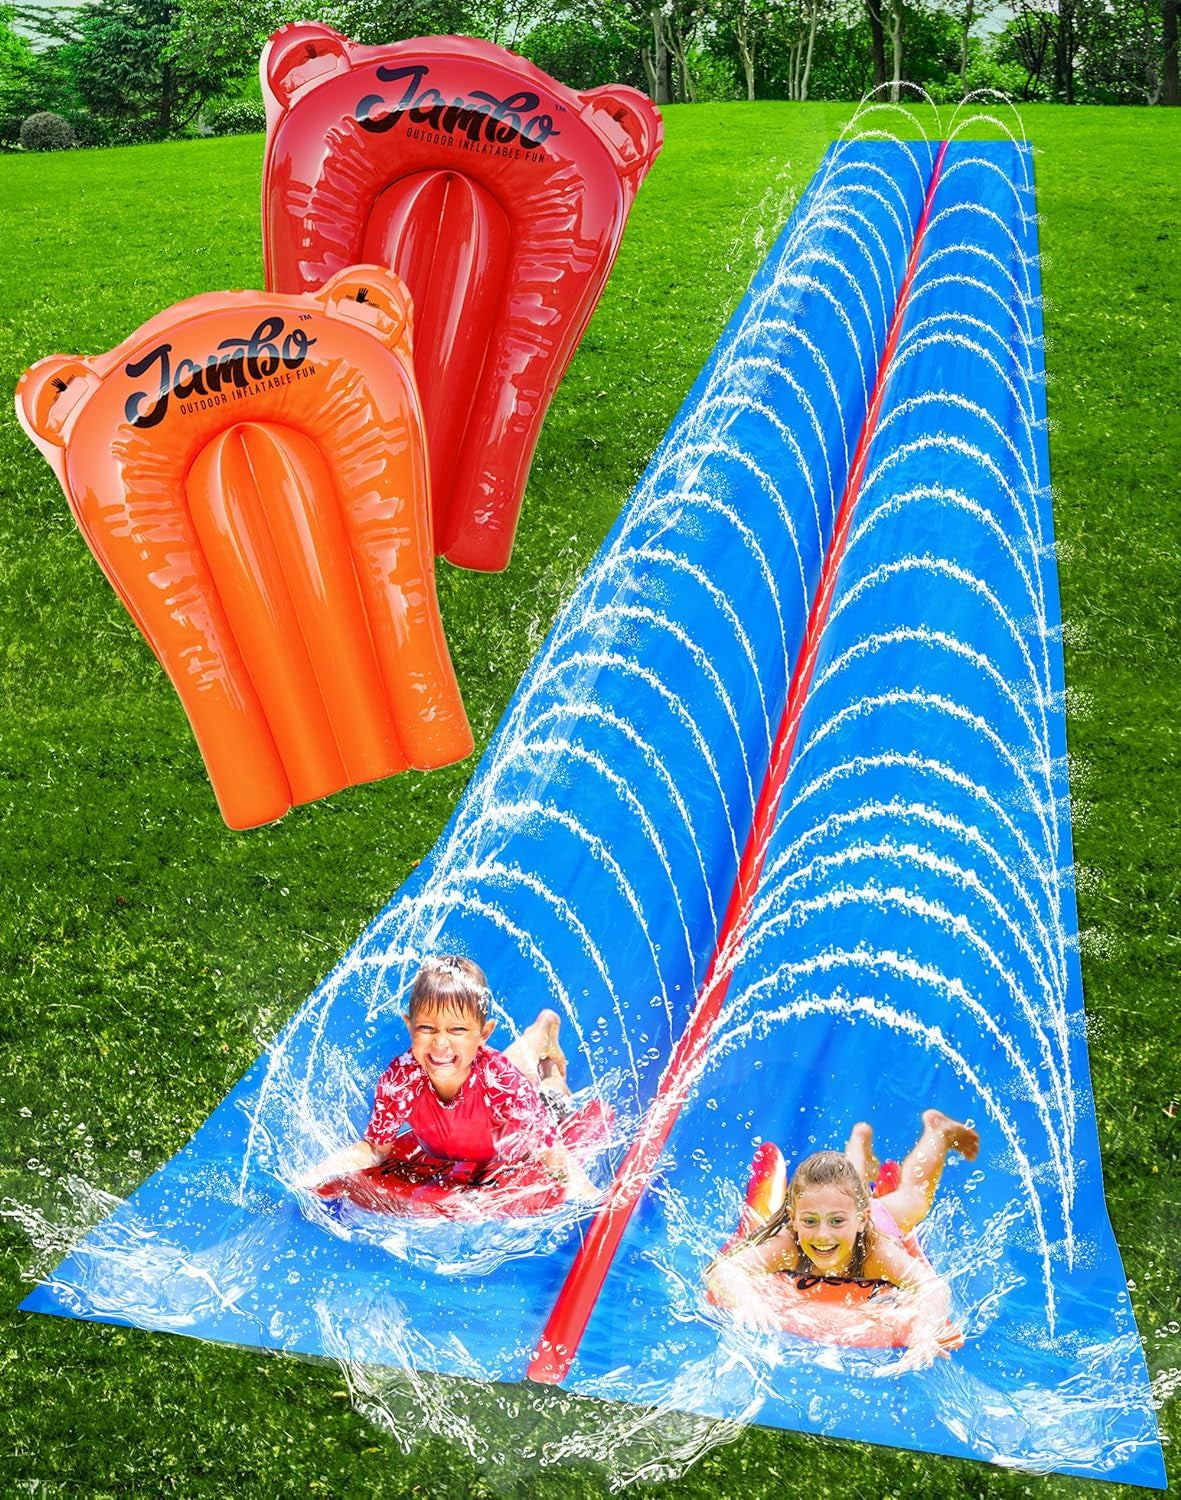 40 FT Huge Slip Splash and Slide for Adults and Children,Heavy Duty Long Tarp for Slip Splash and Slide,Extra Long Slip Splash and Slide,Big Lawn Water Slide,Backyard Waterslide,Outdoor Toys